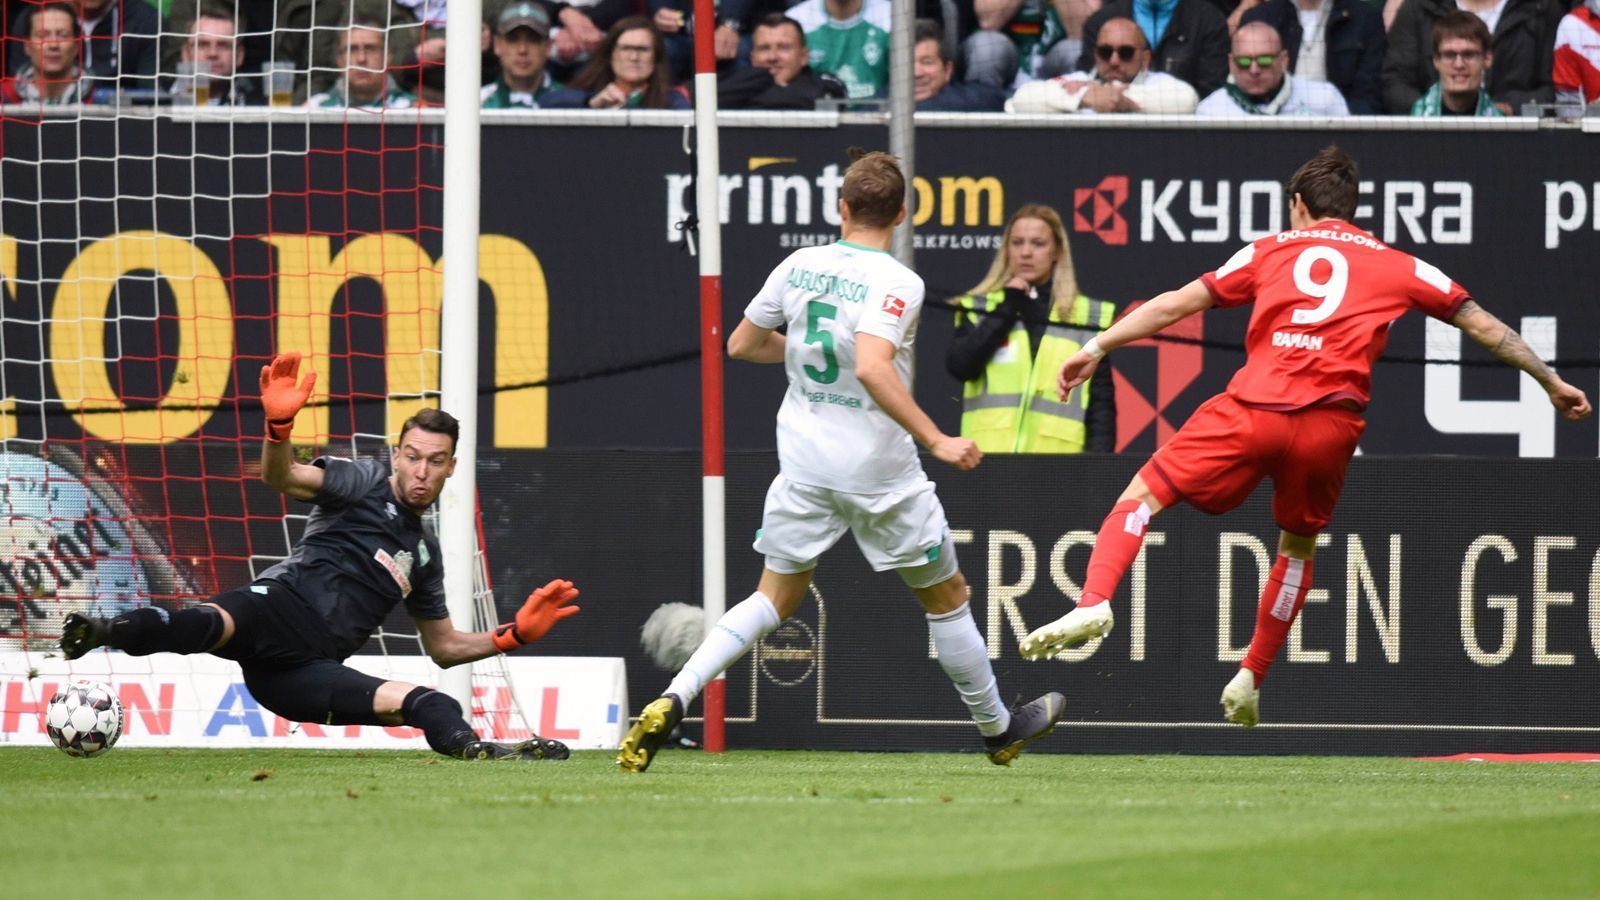 
                <strong>Blitz-Tor: Düsseldorfs Raman stellt Bundesliga-Rekord auf</strong><br>
                Düsseldorfs Benito Raman (re.) leitete mit seinem Treffer zum 1:0 für die Fortuna gegen Werder Bremen schon in der allerersten Minute den späteren 4:1-Erfolg des Aufsteigers ein. Mit seinem Blitztor schaffte es er bzw. die Saison 2018/19 auch gleichzeitig in die Bundesliga-Geschichtsbücher. Denn noch nie zuvor wurden so viele Treffer im Laufe einer Bundesliga-Spielzeit in der ersten Minute erzielt. Ramans Blitztor war das zehnte in der laufenden Saison innerhalb der ersten 60 Sekunden einer Bundesliga-Begegnung. (Quelle: optafranz/twitter)
              